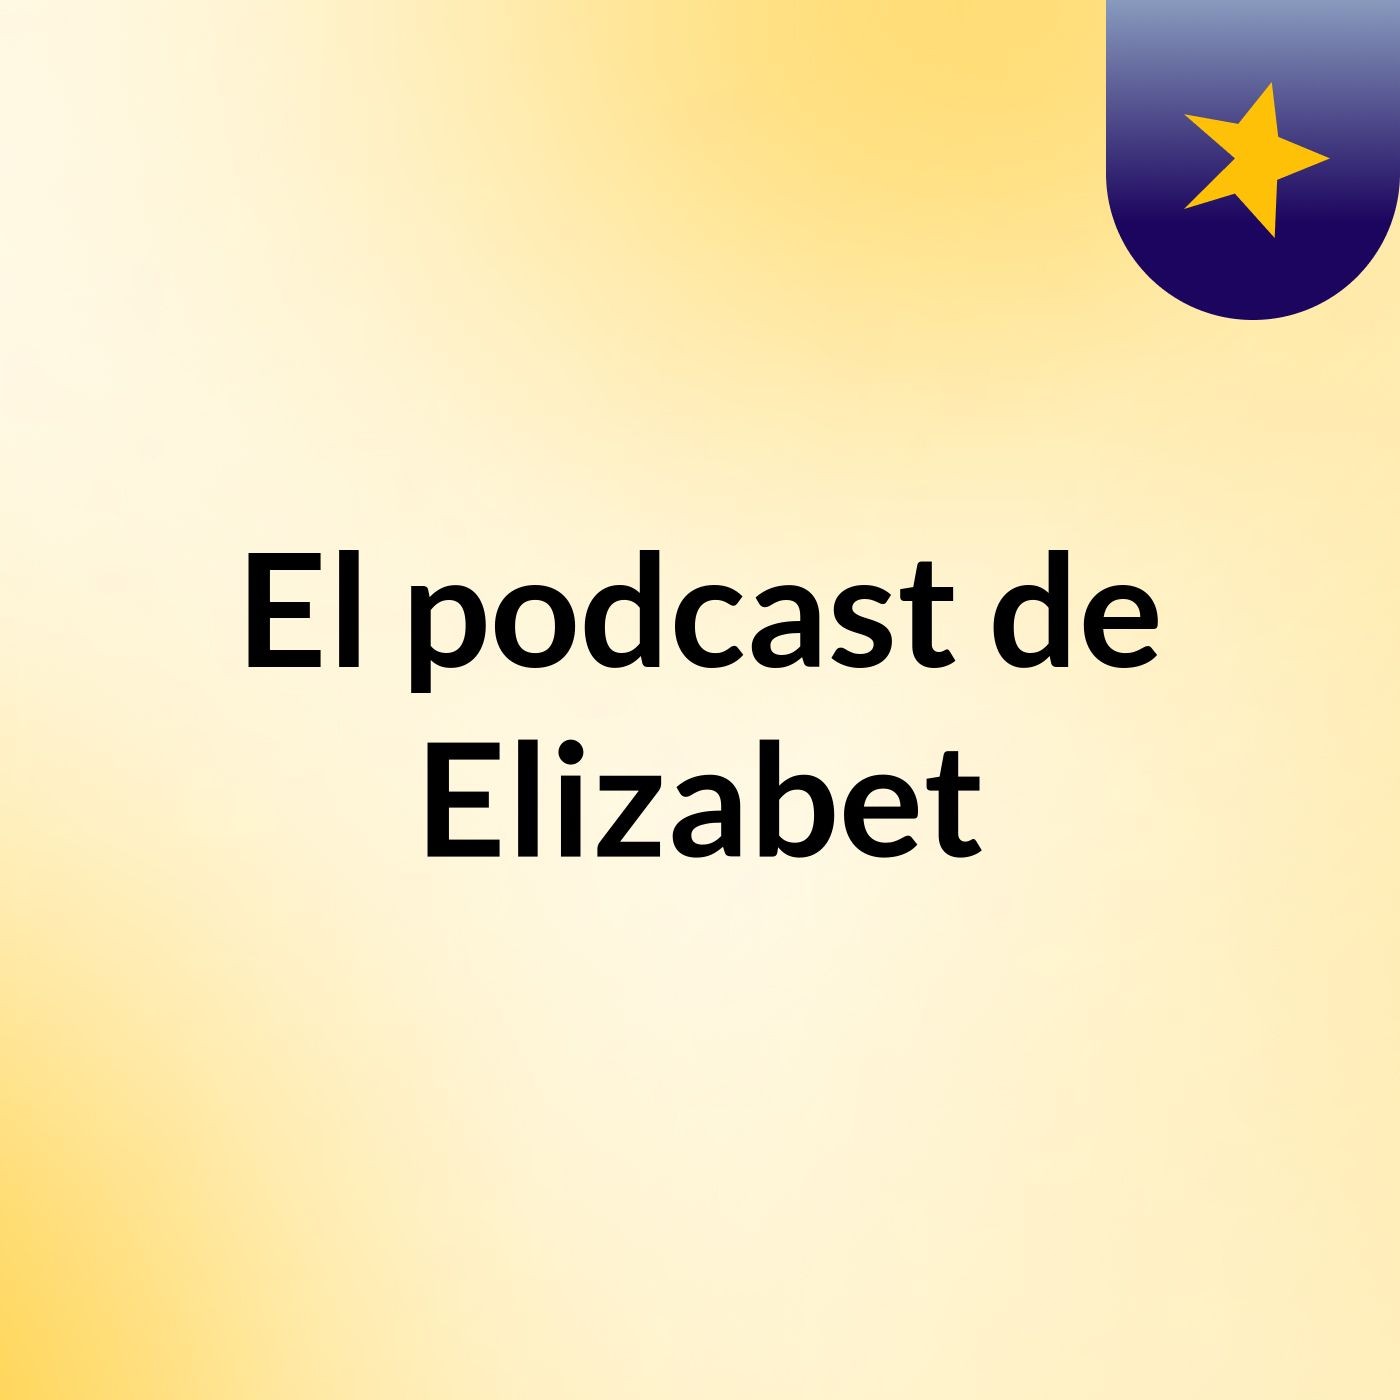 El podcast de Elizabet